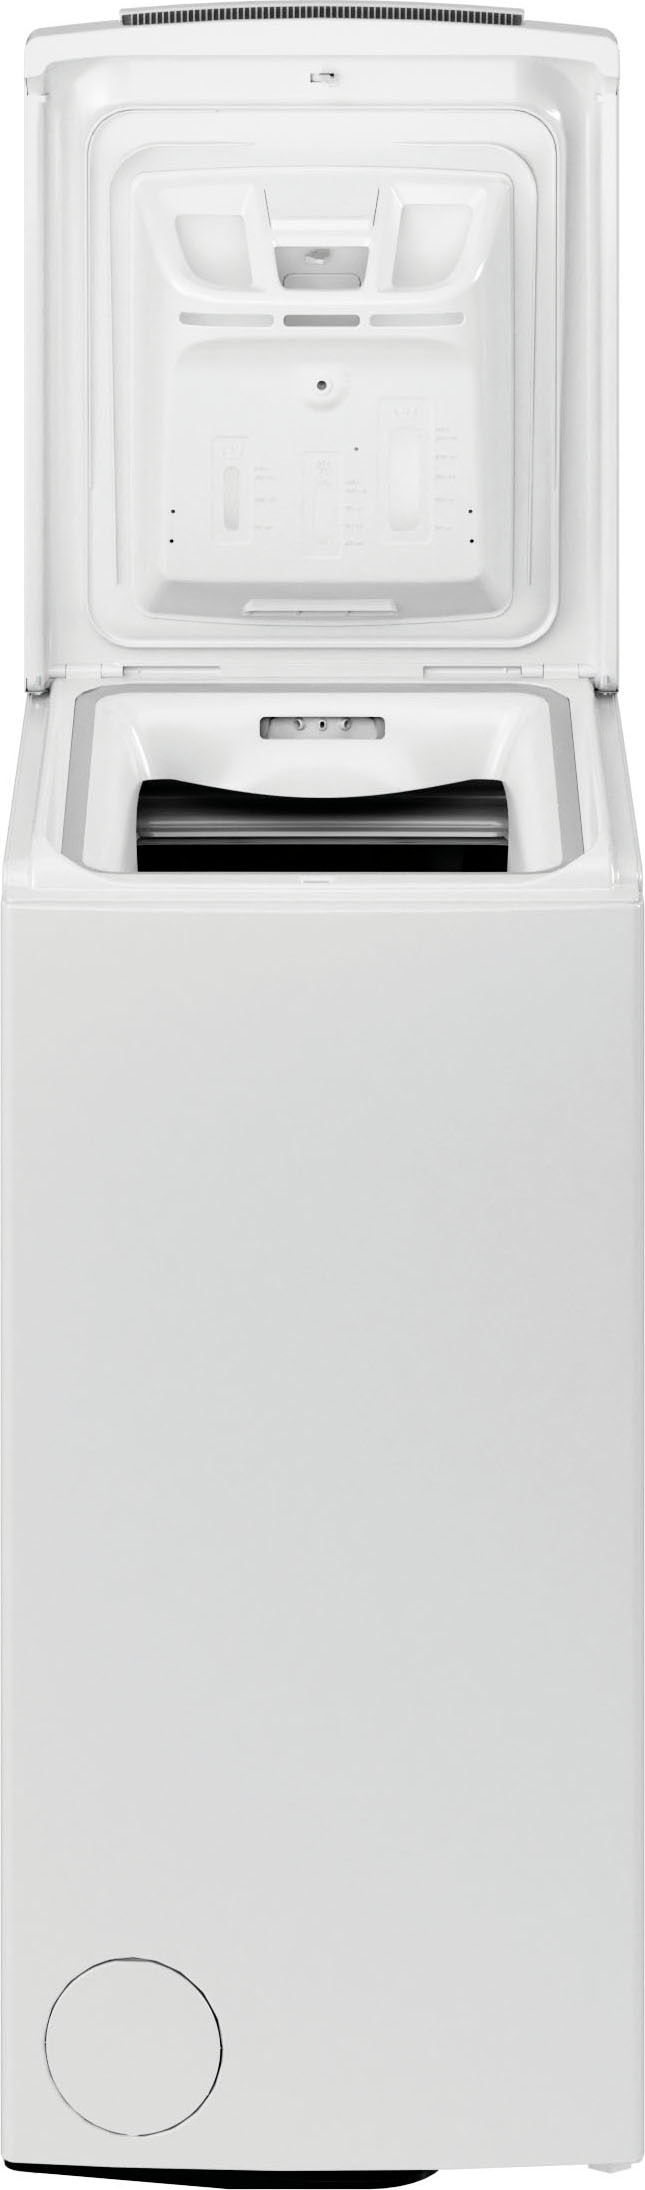 BAUKNECHT Waschmaschine Toplader »WMT 612 B5«, WMT 612 B5, 6 kg